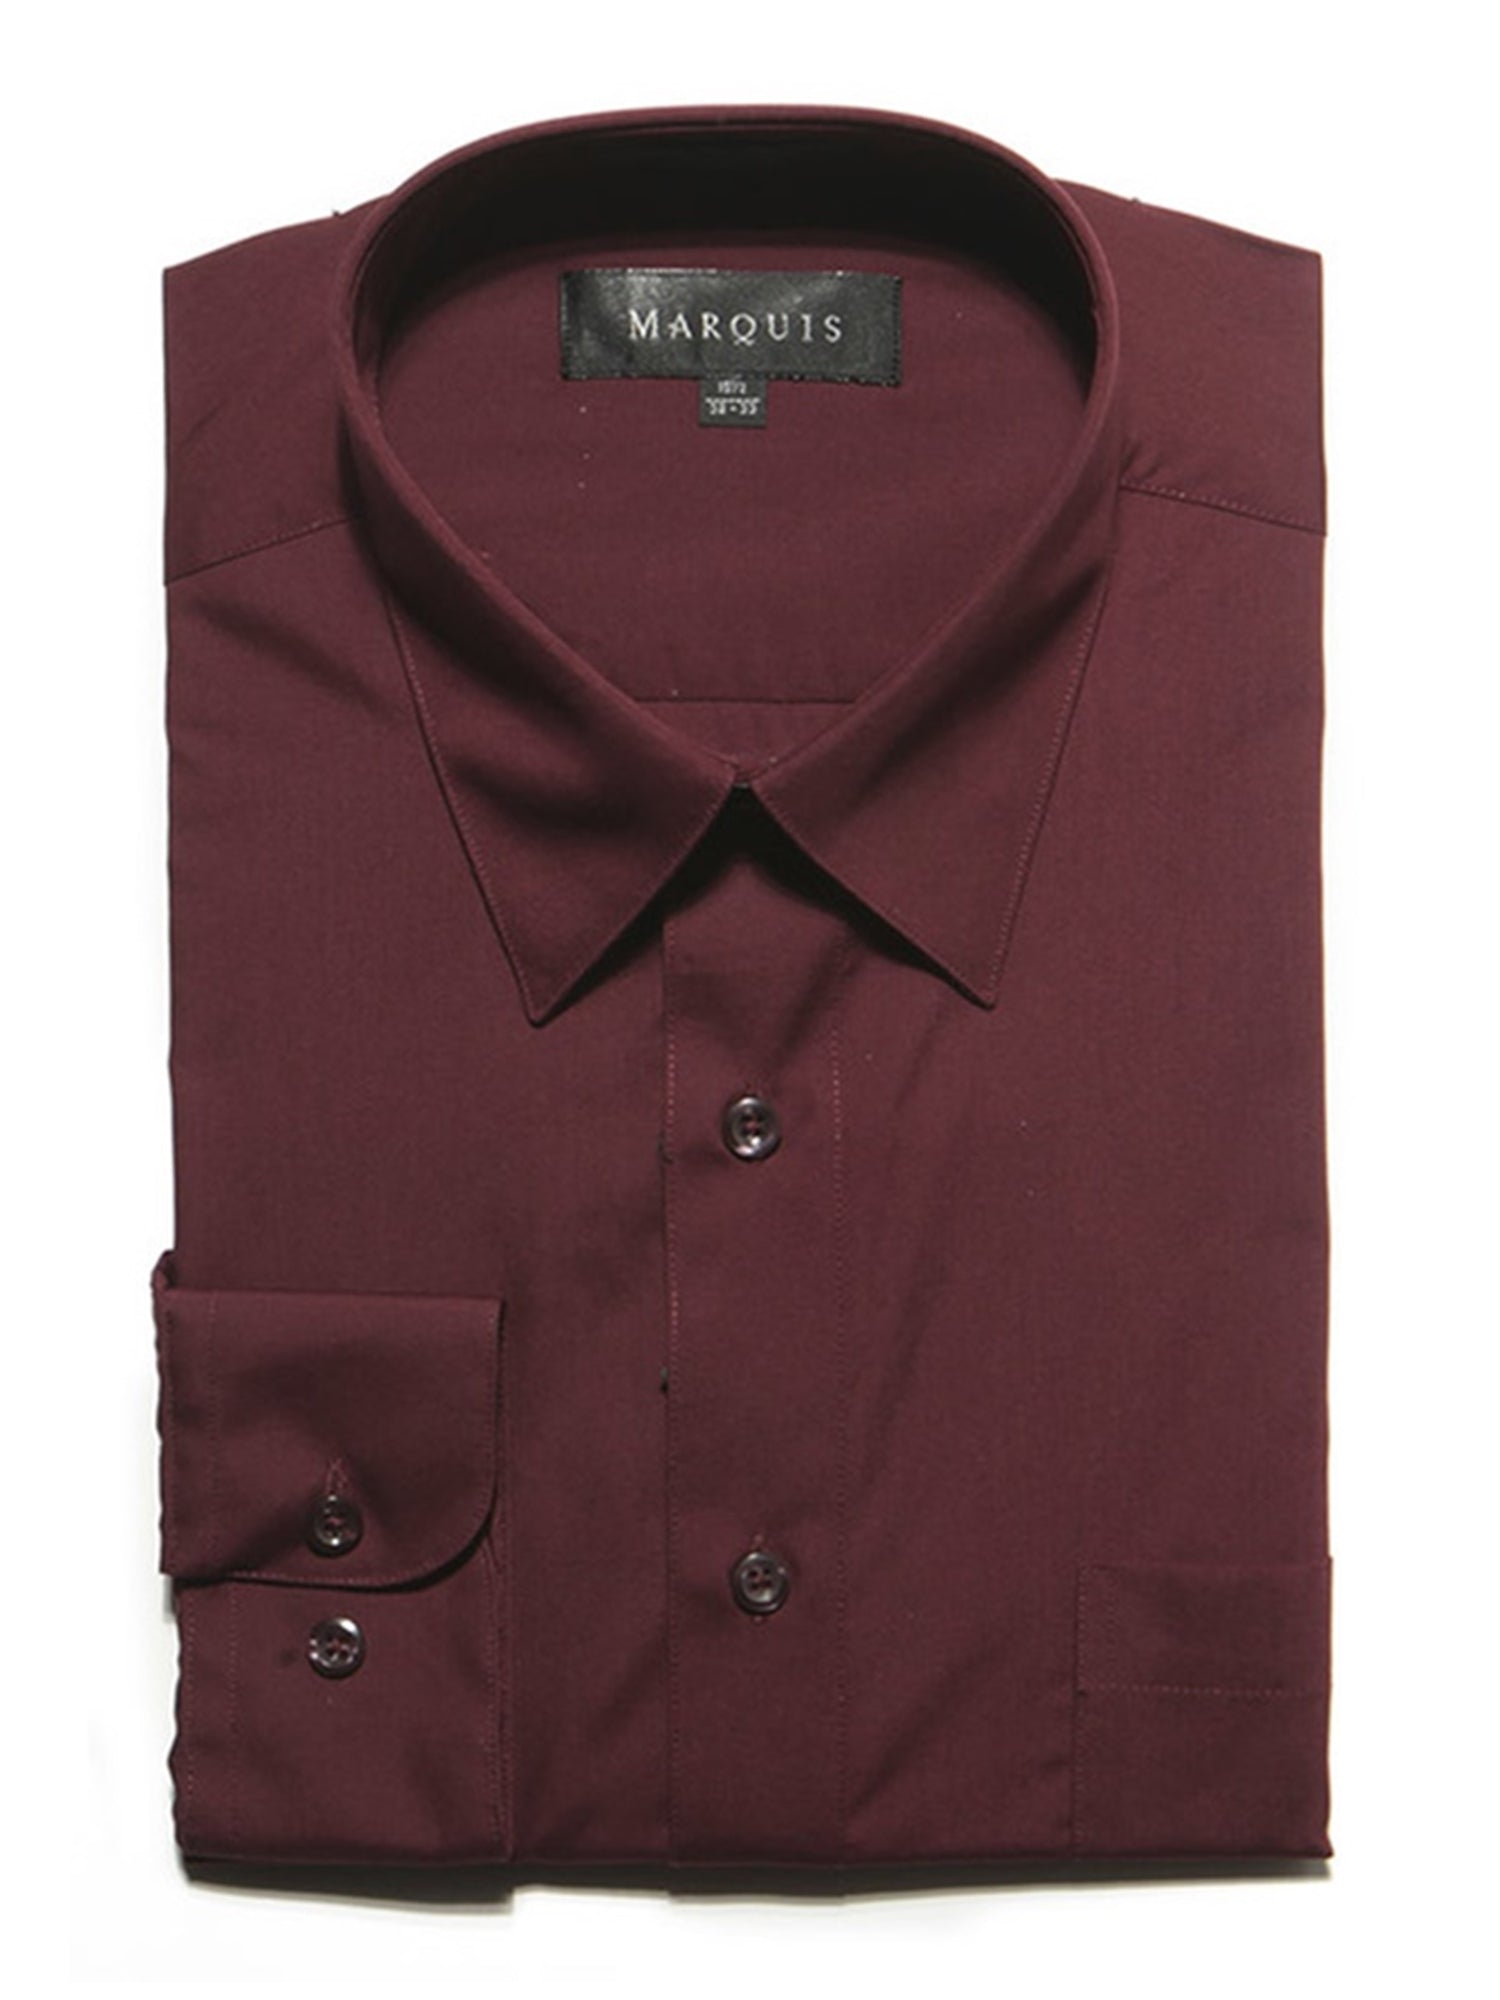 Marquis Men's Long Sleeve Regular Fit Dress Shirt Dress Shirt Marquis Burgundy 14.5 Neck 32/33 Sleeve 